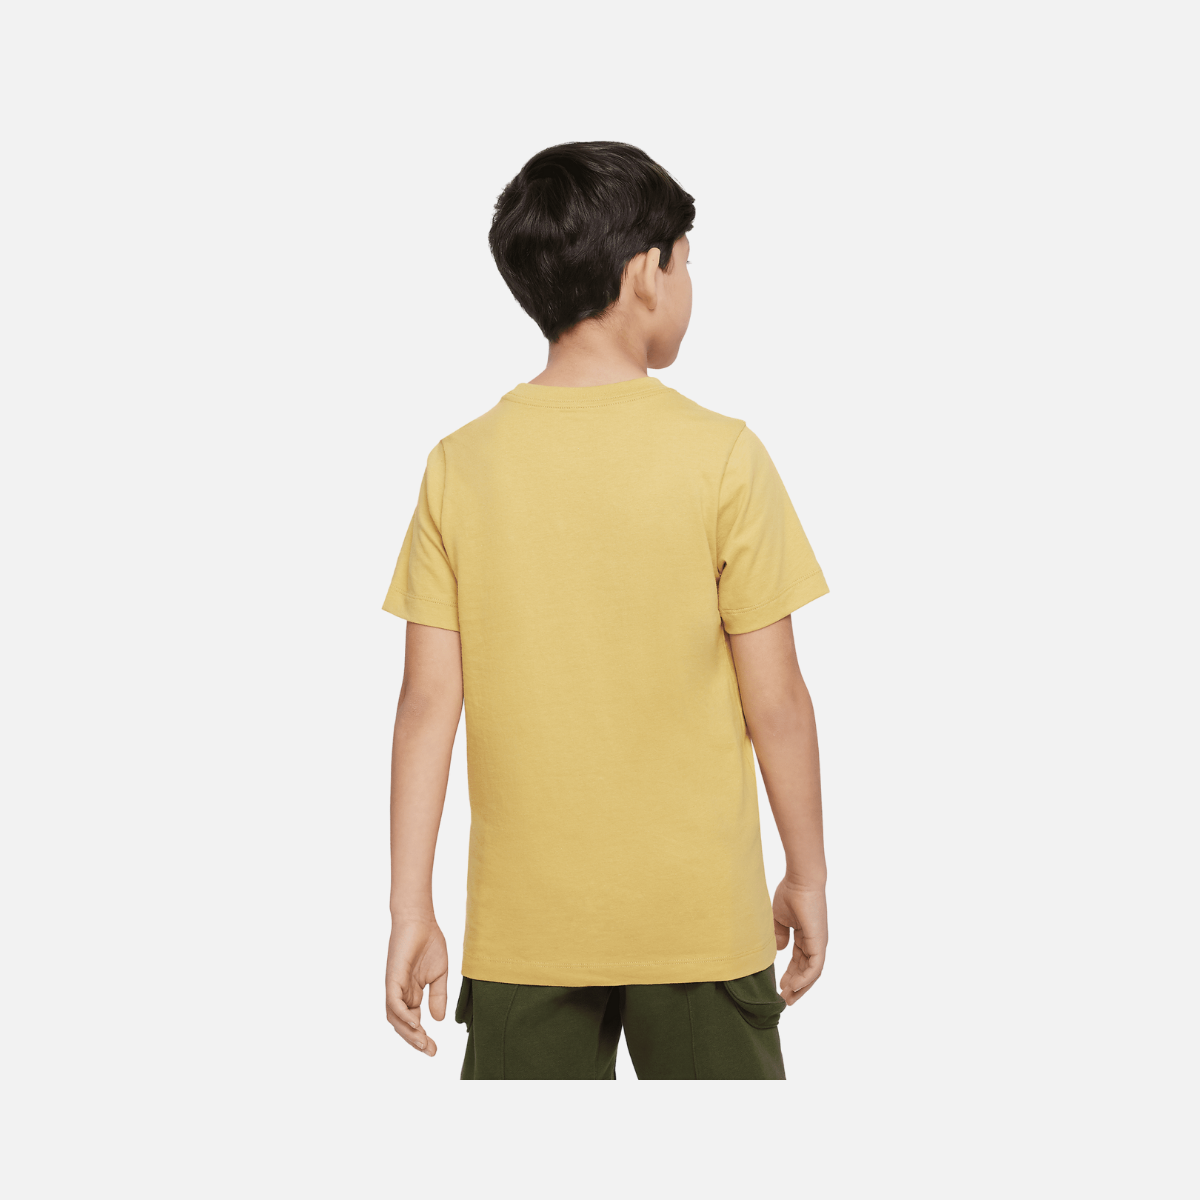 Nike Sportwear Older Kids(Boys) T-shirt -Wheat Gold